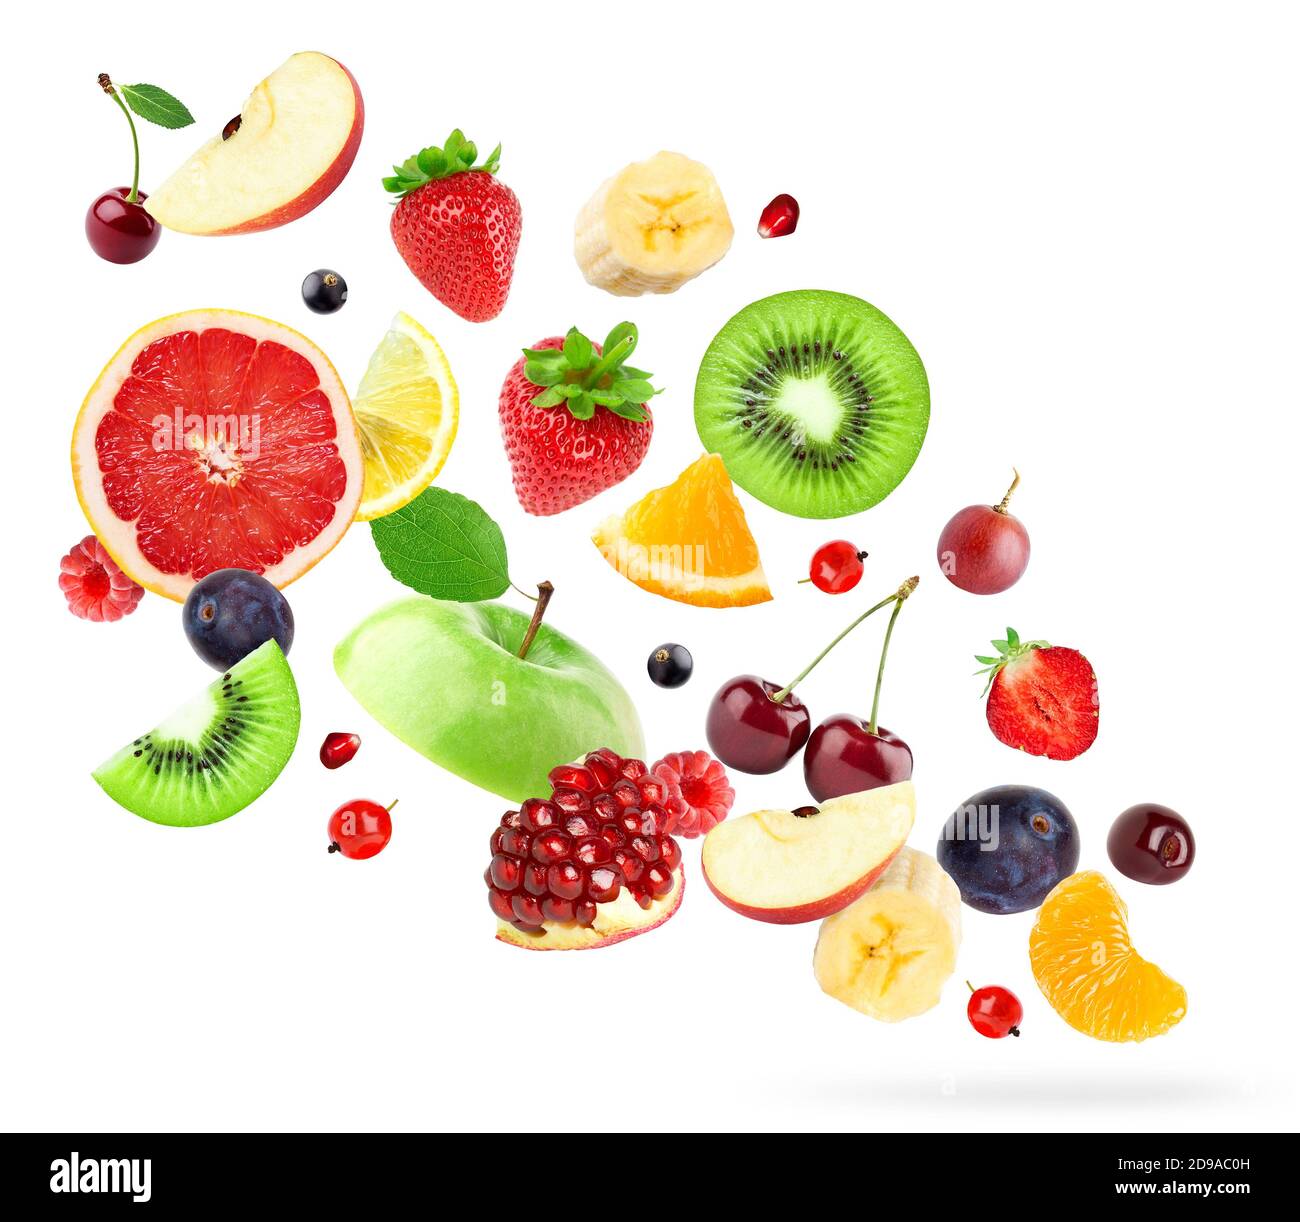 Mixed fruits on white background. Falling fruits. Stock Photo